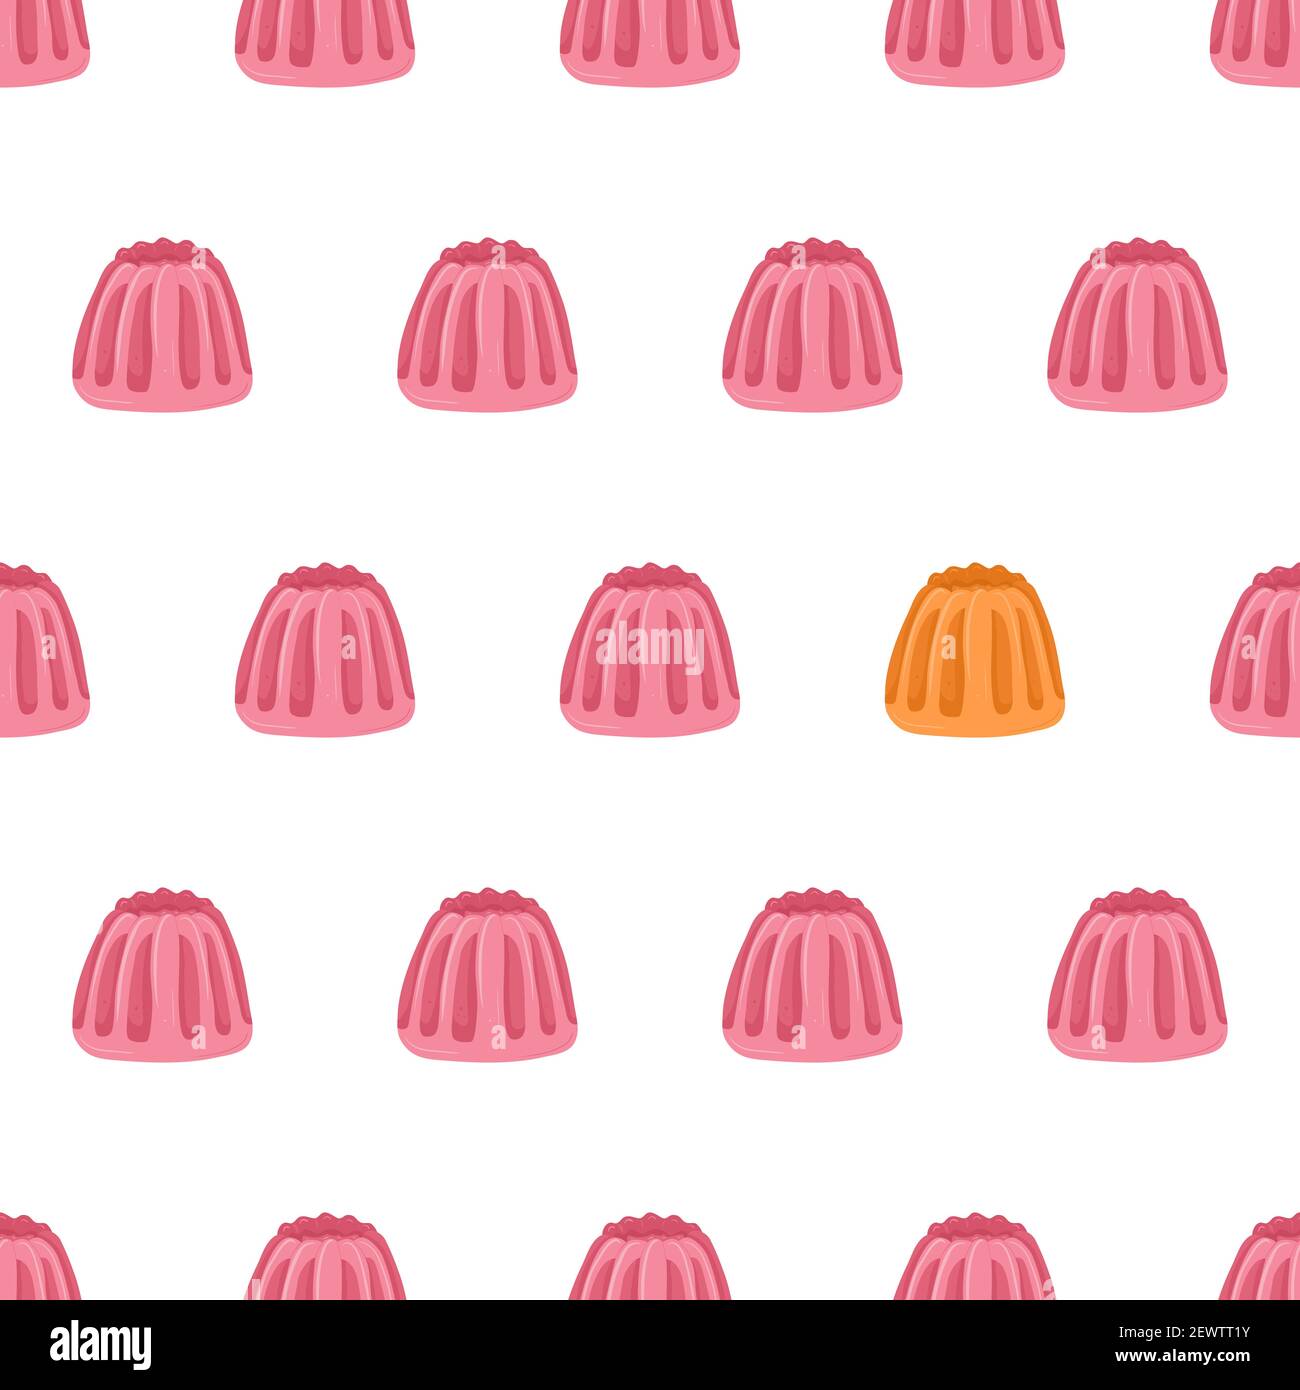 Cartoon nahtlose Muster für Stoff-Design mit rosa Gelee. Auffallendes Element - ein Orangengelee. Farbenfroher Hintergrund. Stock Vektor